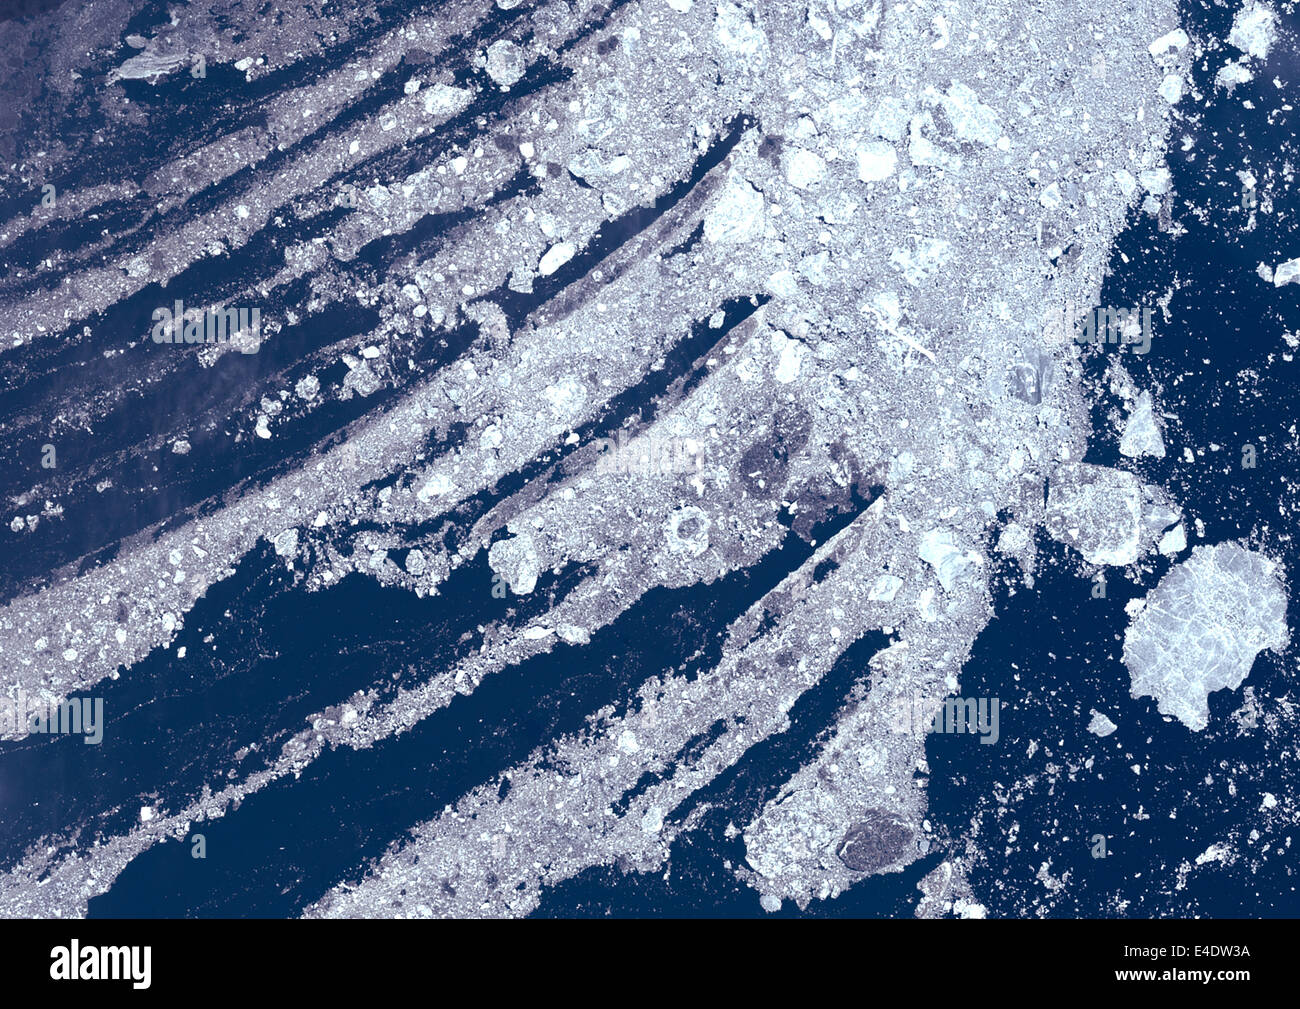 Packeis In Sibirien, Russland, Echtfarben-Satellitenbild. Echtfarben-Satellitenbild des Packeises im Norden Russlands, südlich von t Stockfoto